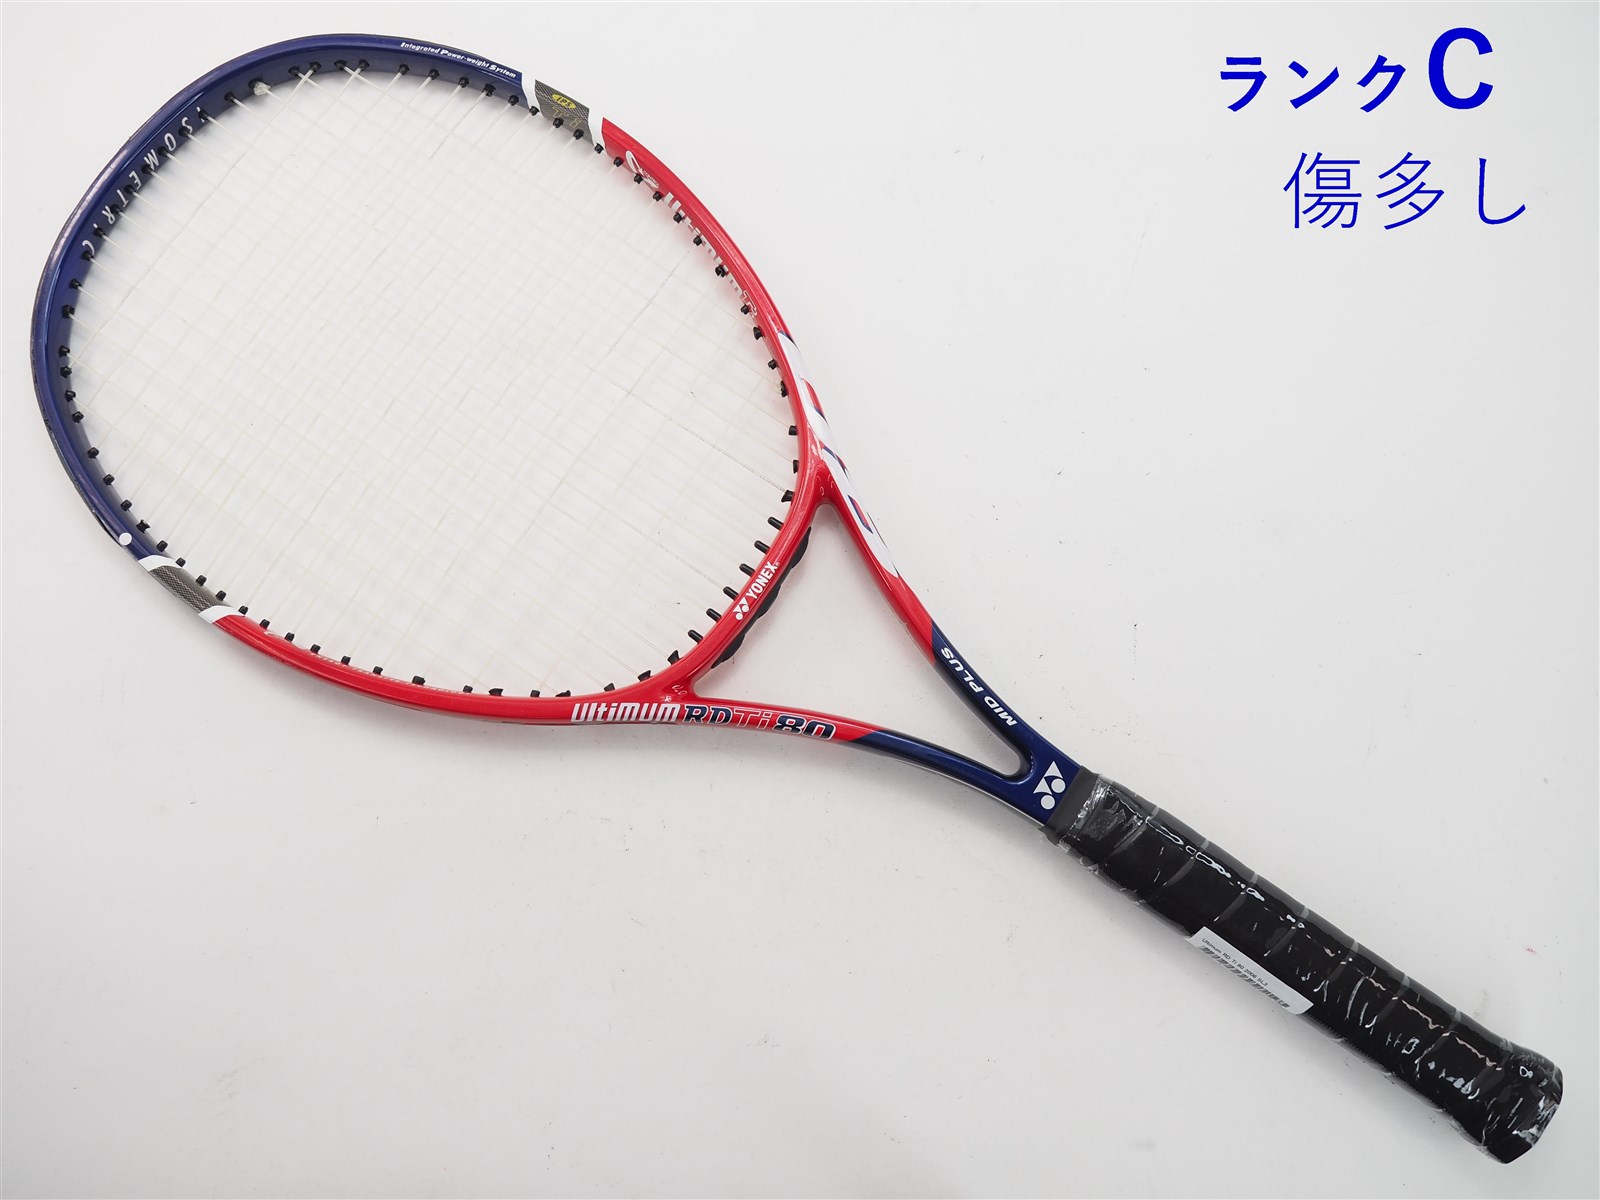 YONEX テニスラケット ヨネックス アルティマム RD Ti 80 2010年モデル (UL2)YONEX Ultimum RD Ti 80 2010